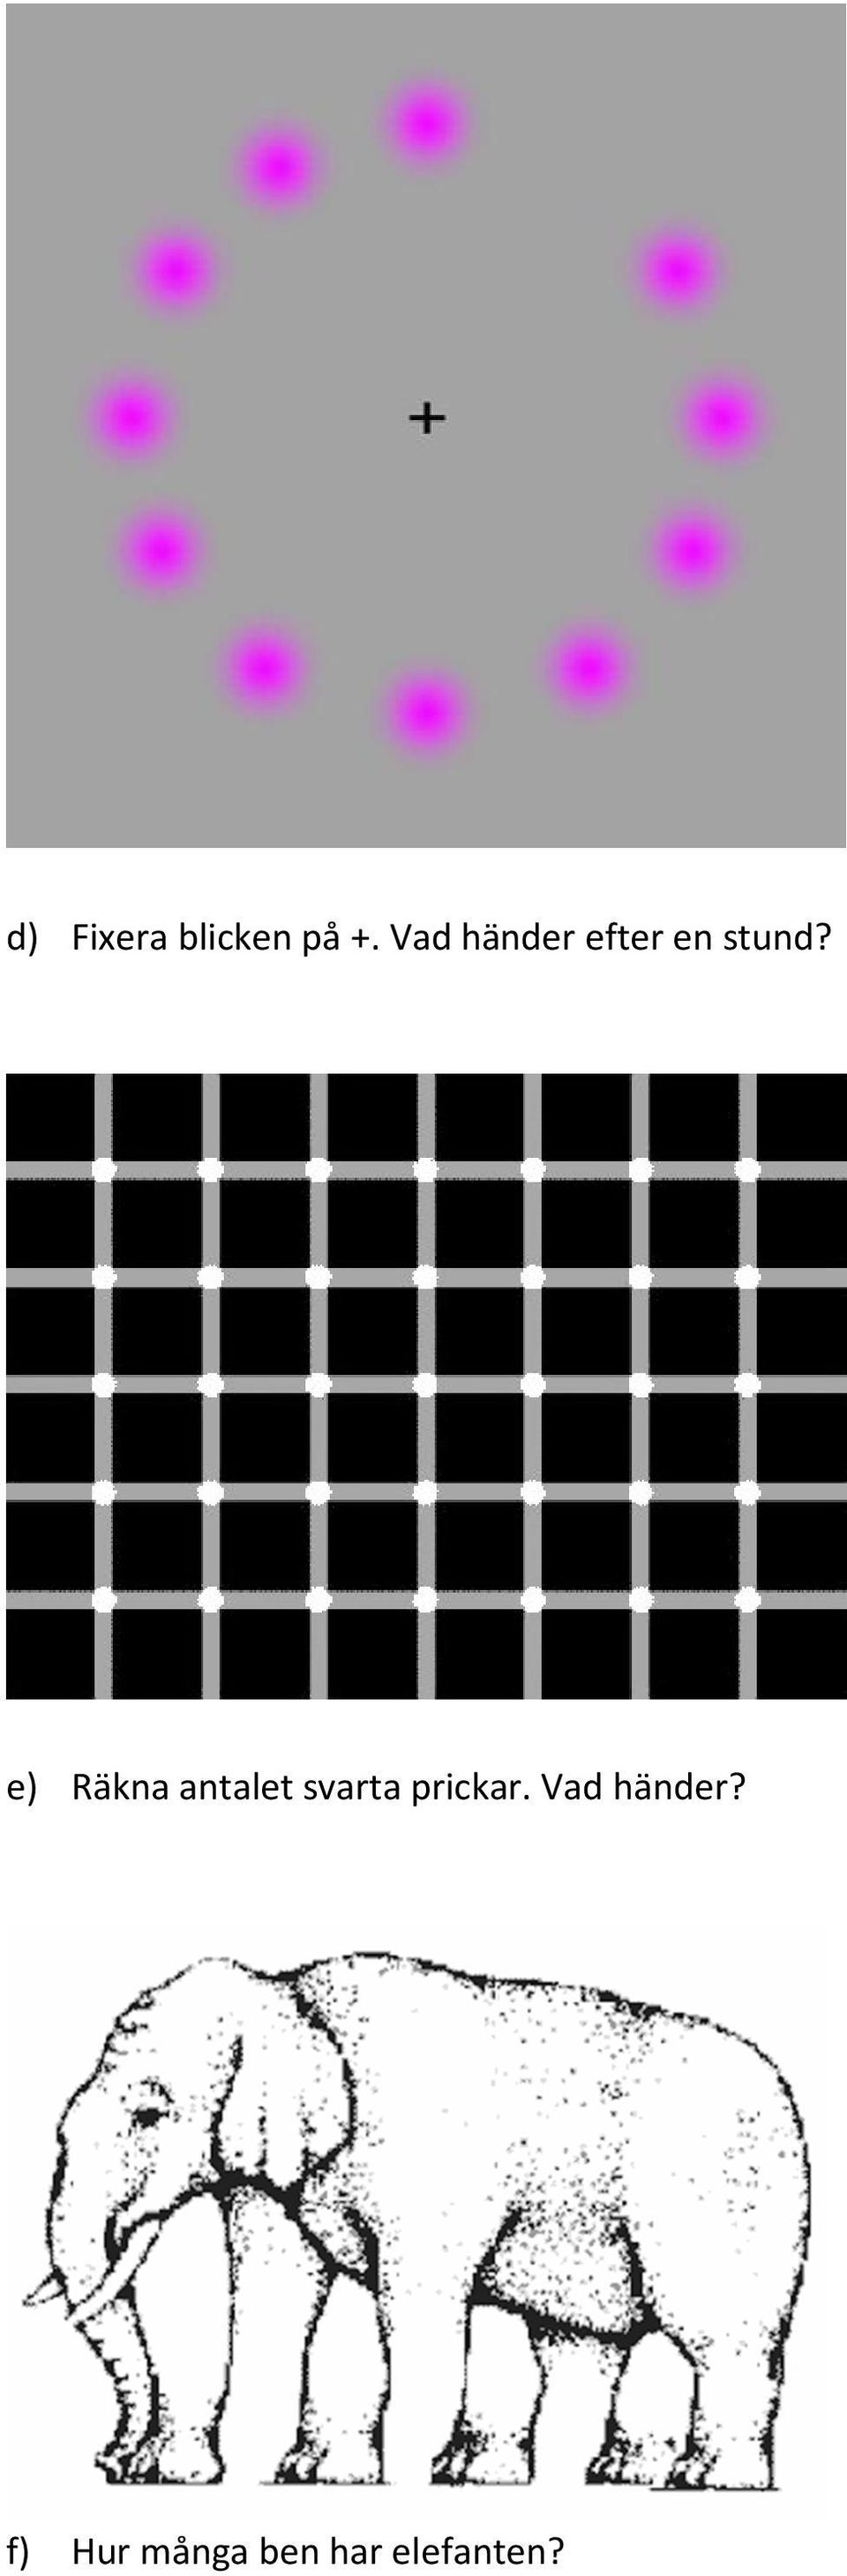 e) Räkna antalet svarta prickar.